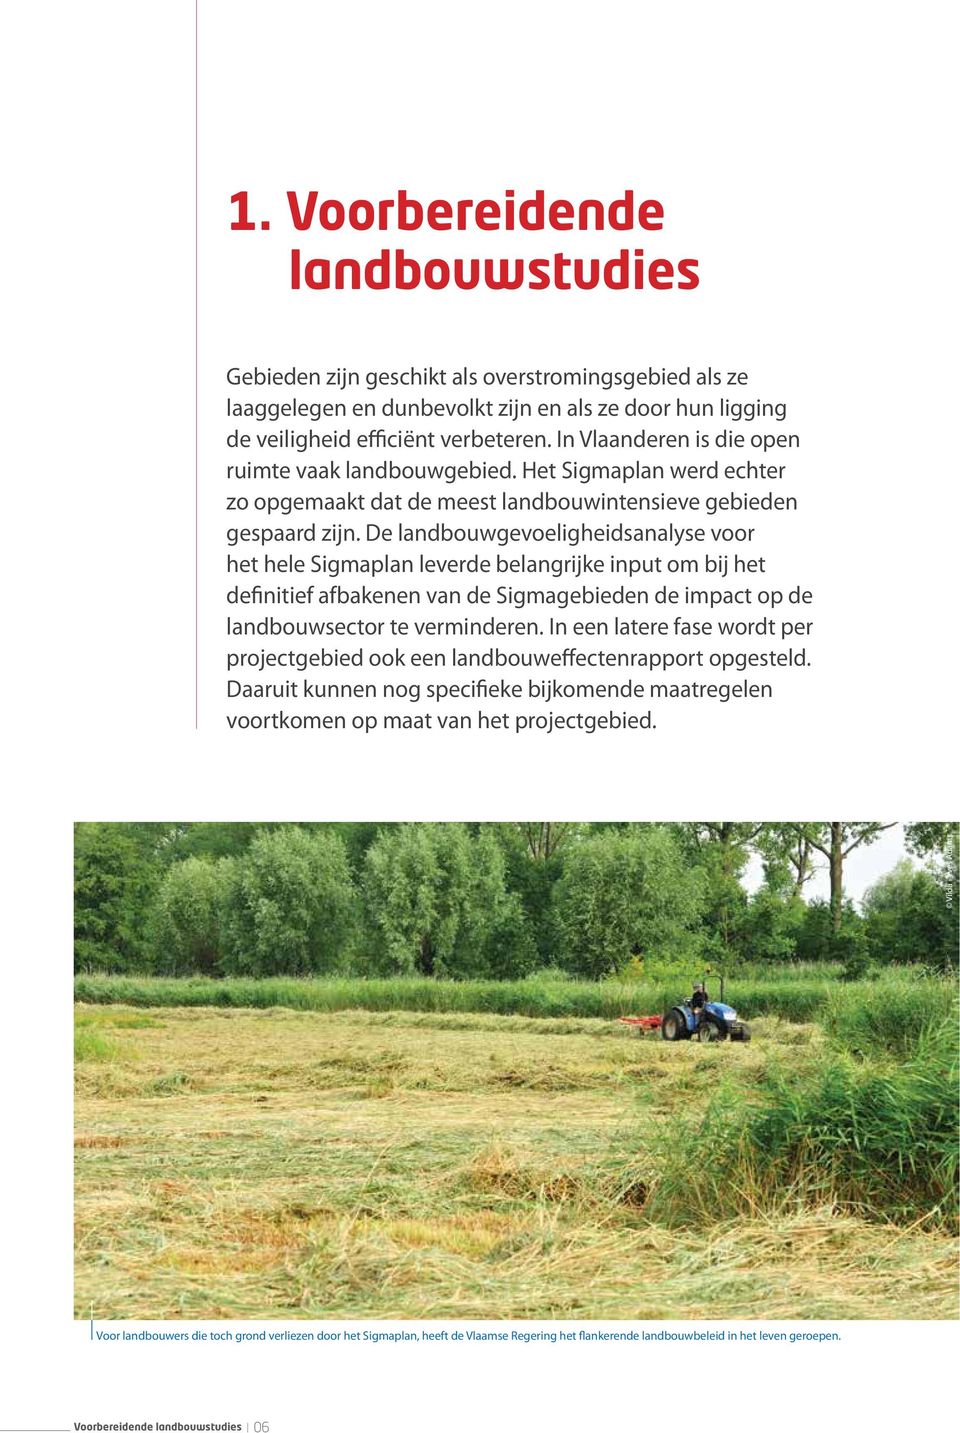 De landbouwgevoeligheidsanalyse voor het hele Sigmaplan leverde belangrijke input om bij het definitief afbakenen van de Sigmagebieden de impact op de landbouwsector te verminderen.